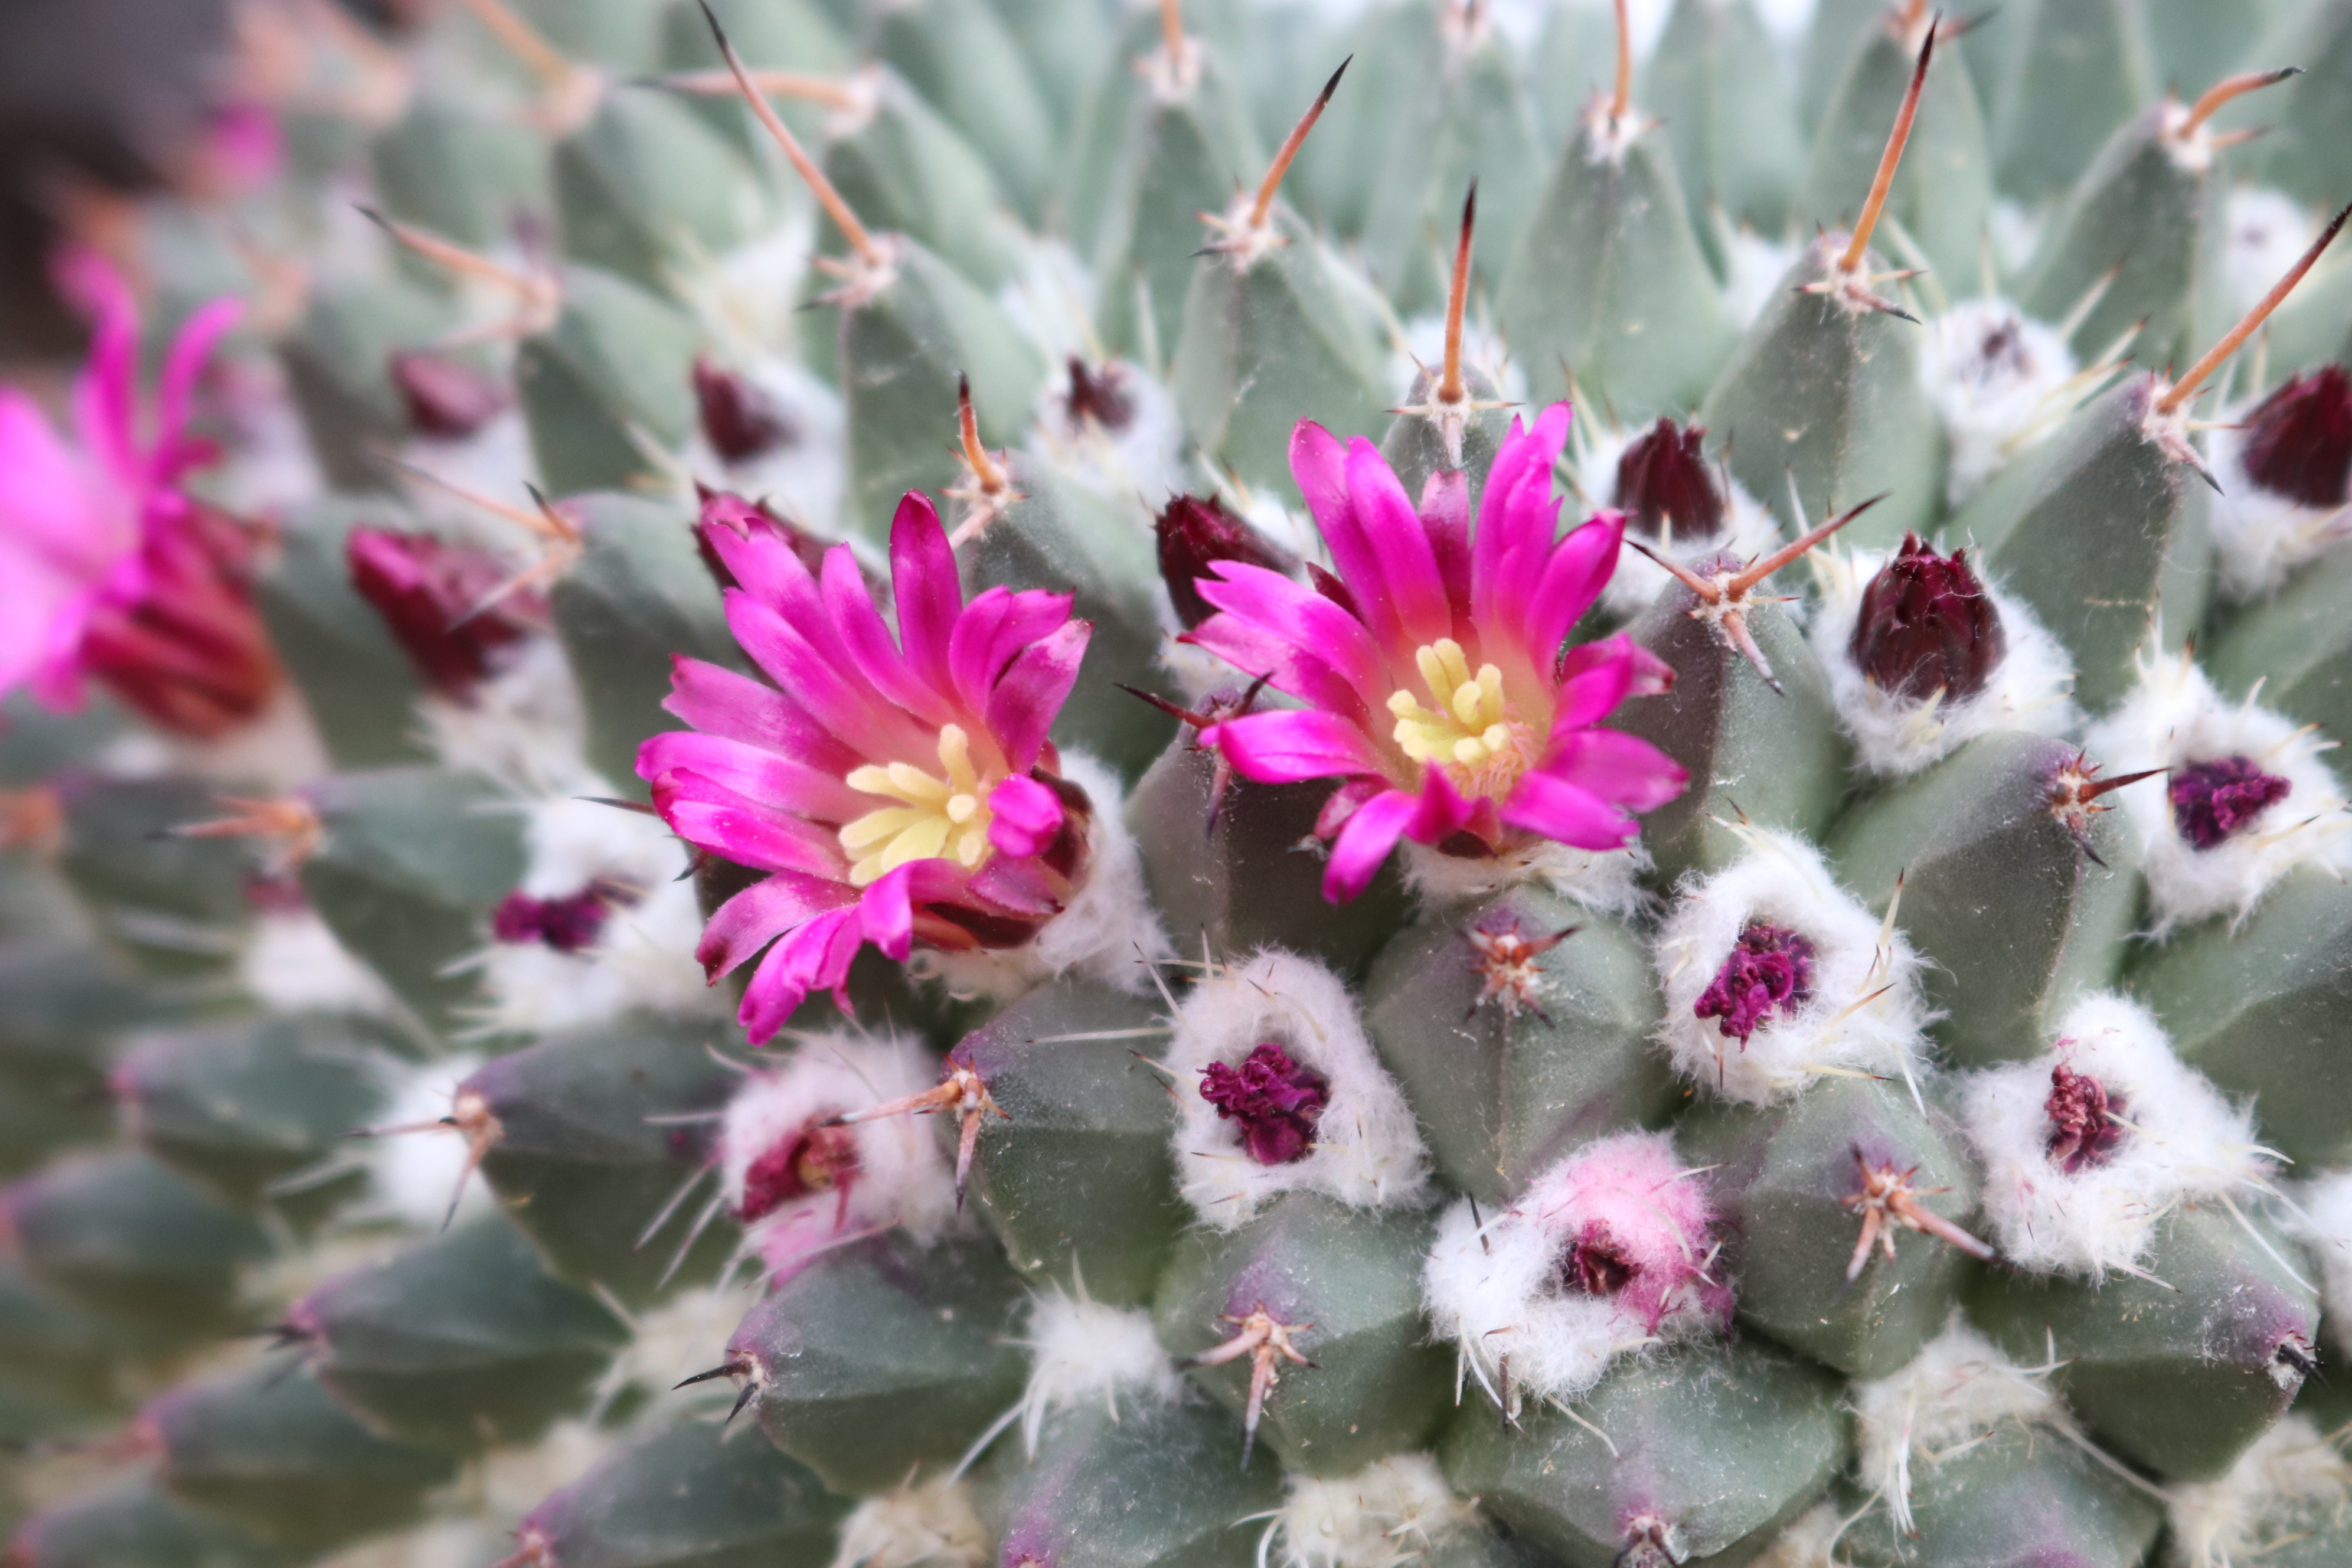 咲くやこの花館 乾燥 地植物室にてメキシコ原産の マミラリア ポリテレ が小さなお花を咲かせはじめています ピンク色のお花が可愛らしいですね 他にも 乾燥地植物室では サボテンのお花が続々と見頃を迎えています 是非ご覧ください 咲くや